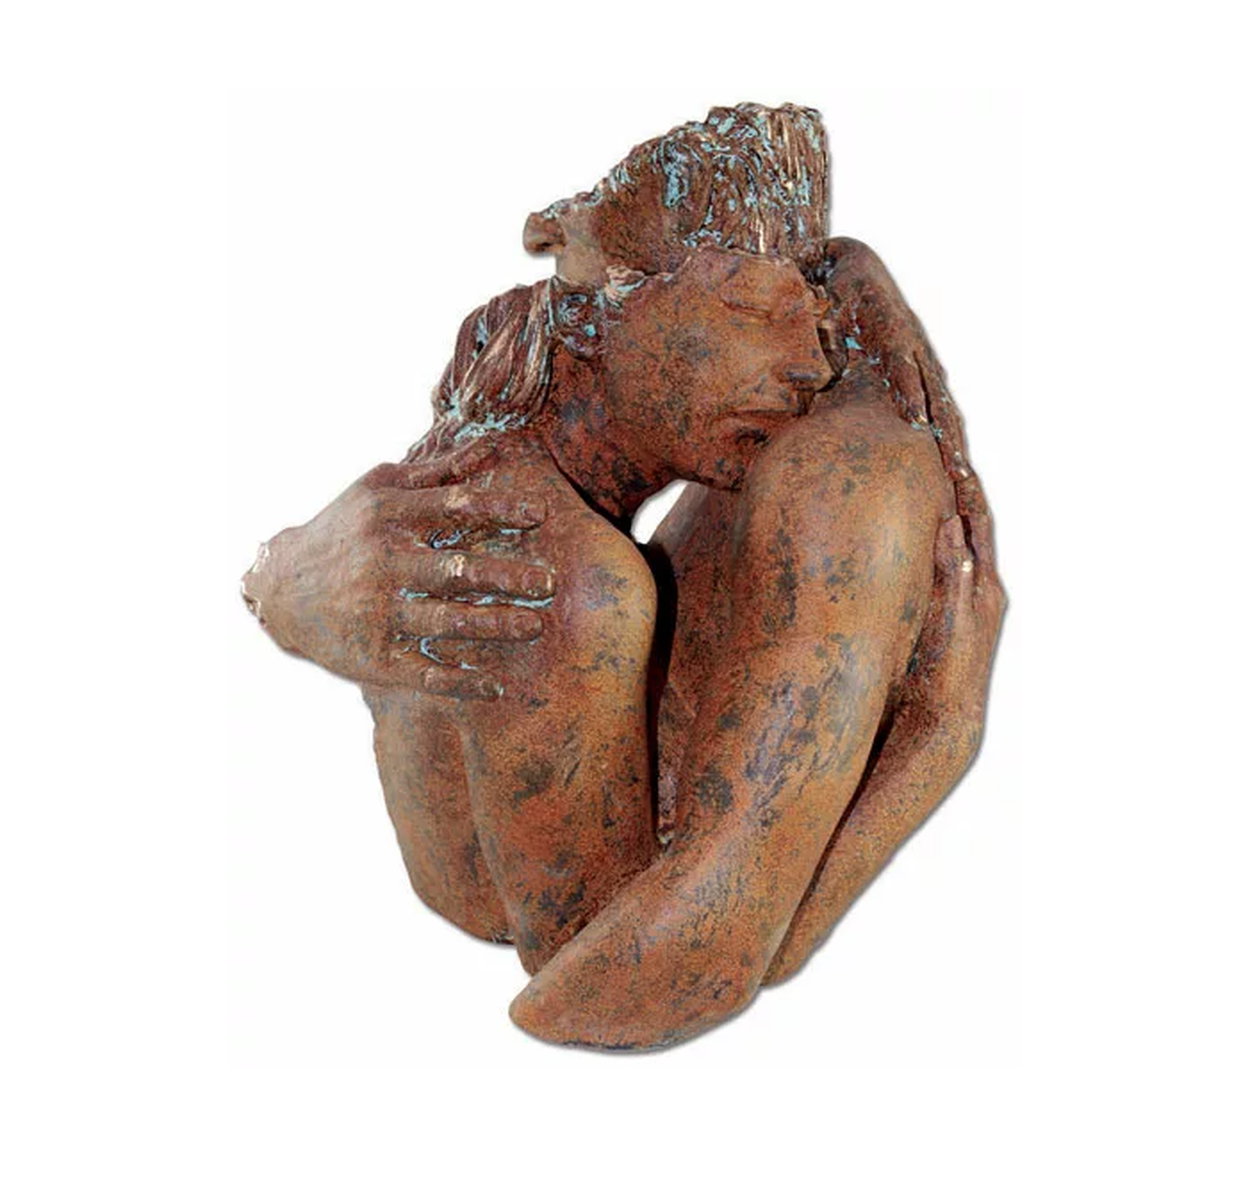 Liebesskulptur "Wertschätzung" von Angeles Anglada, Kunstguss in Steinoptik